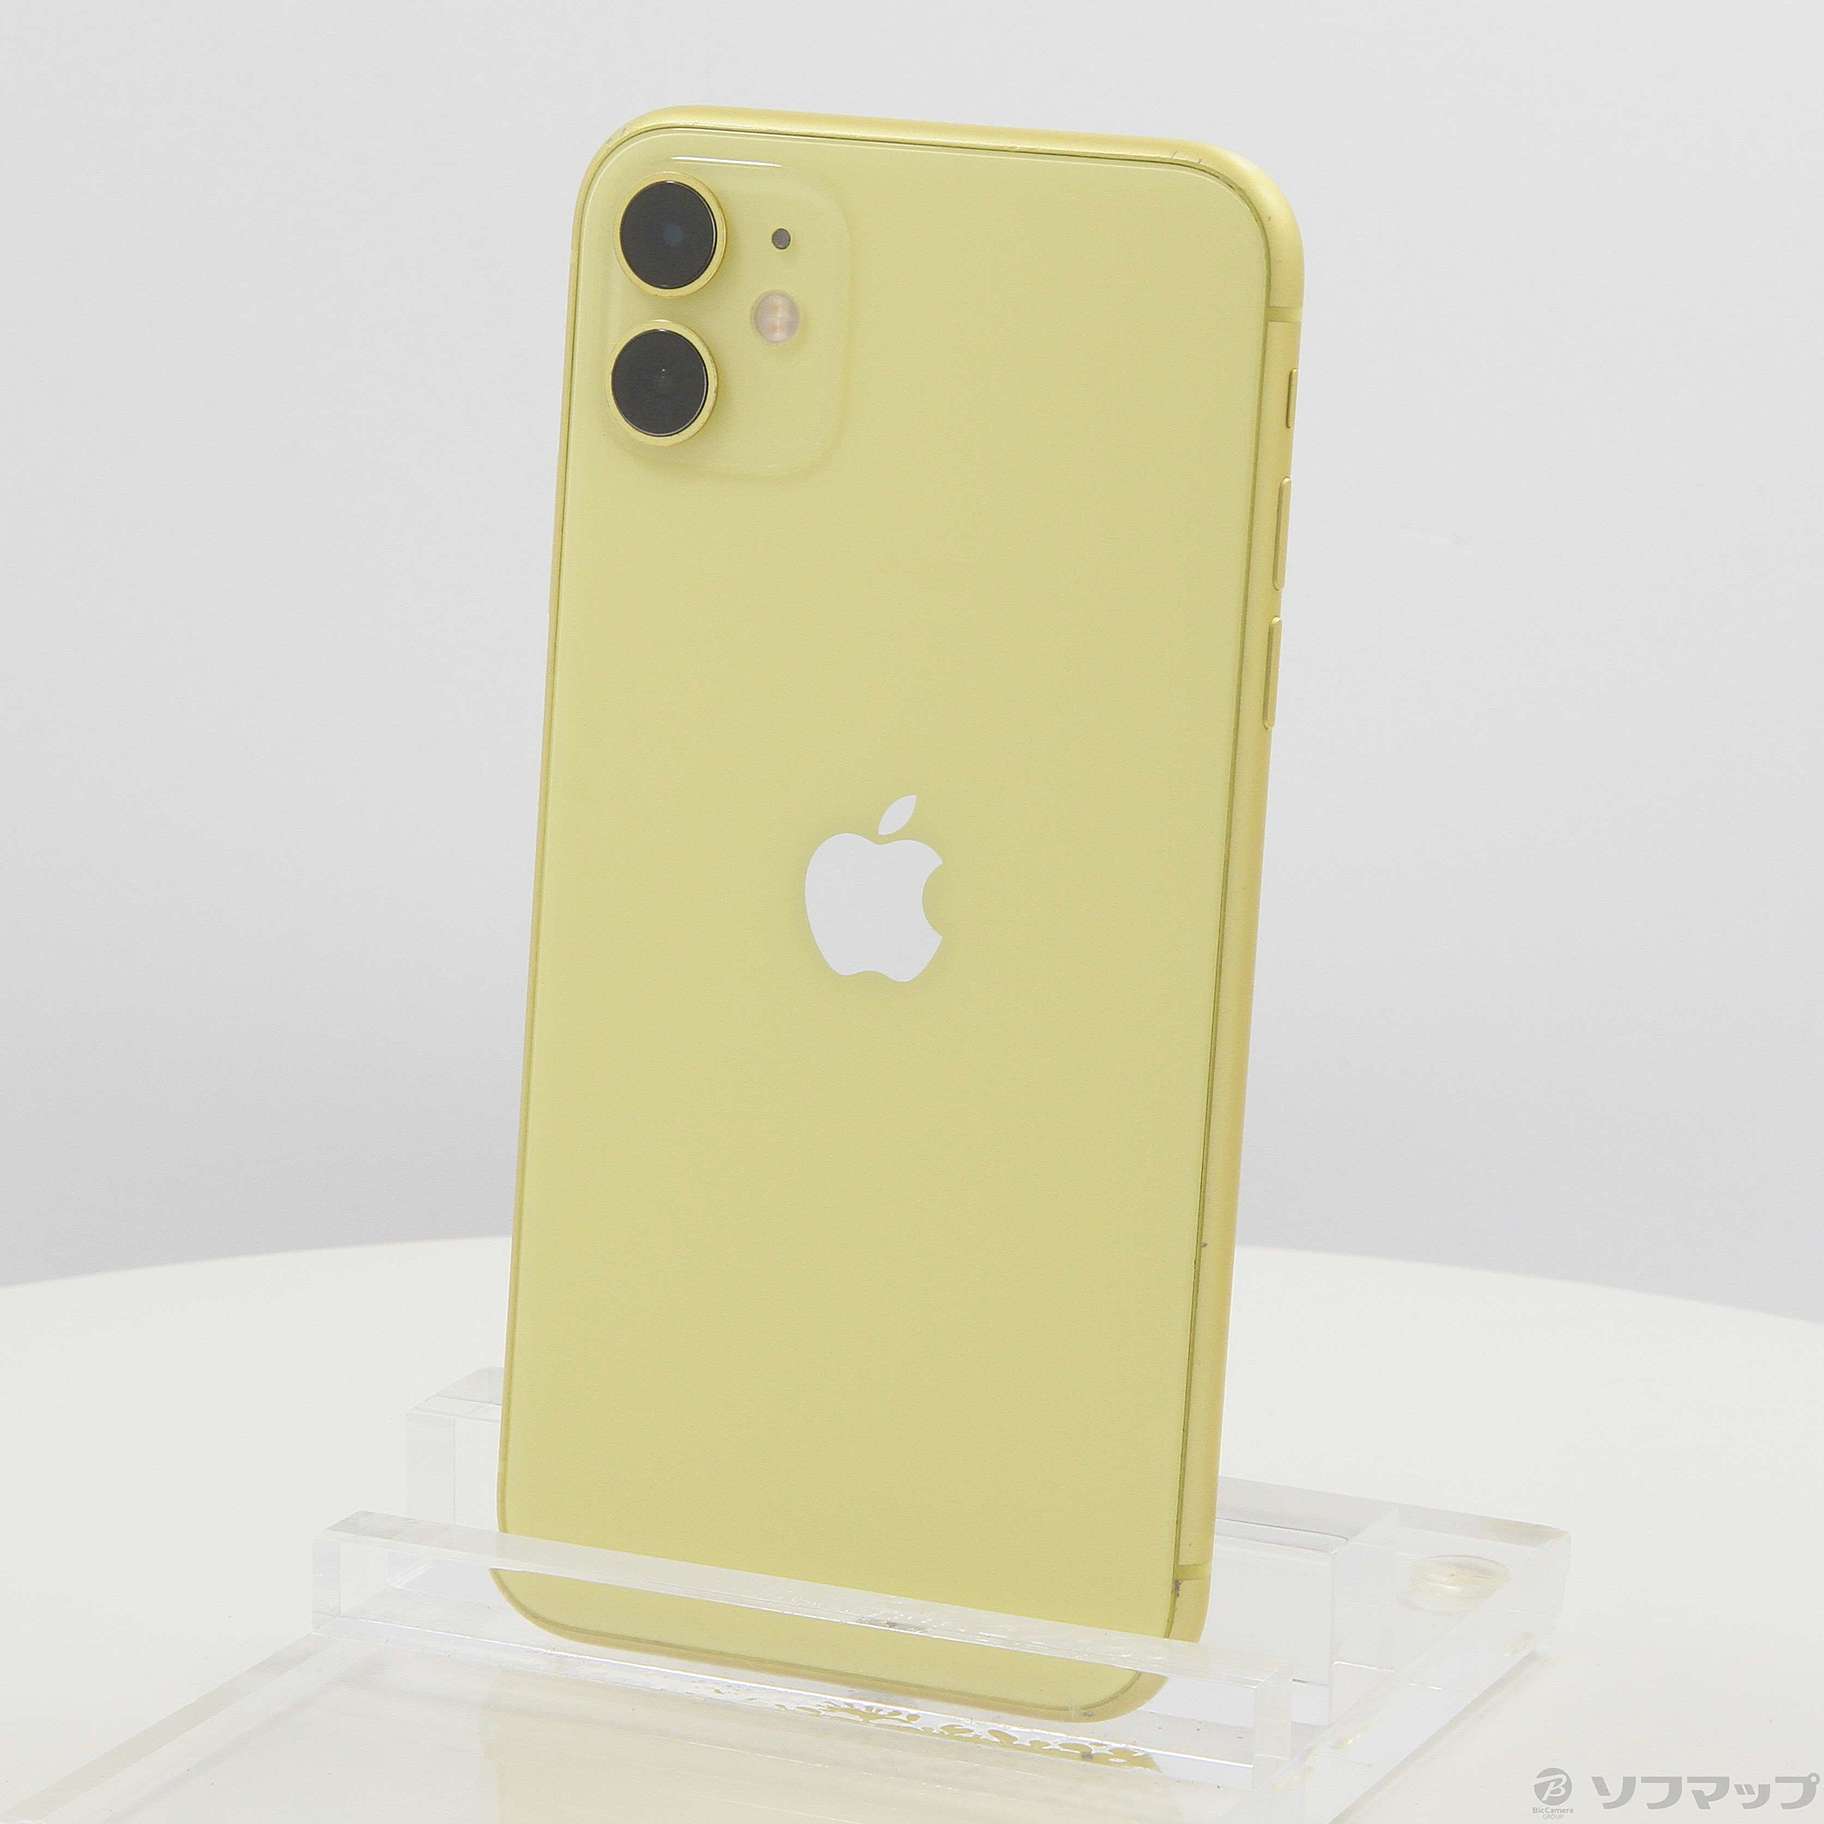 iPhone11 64GB yellow